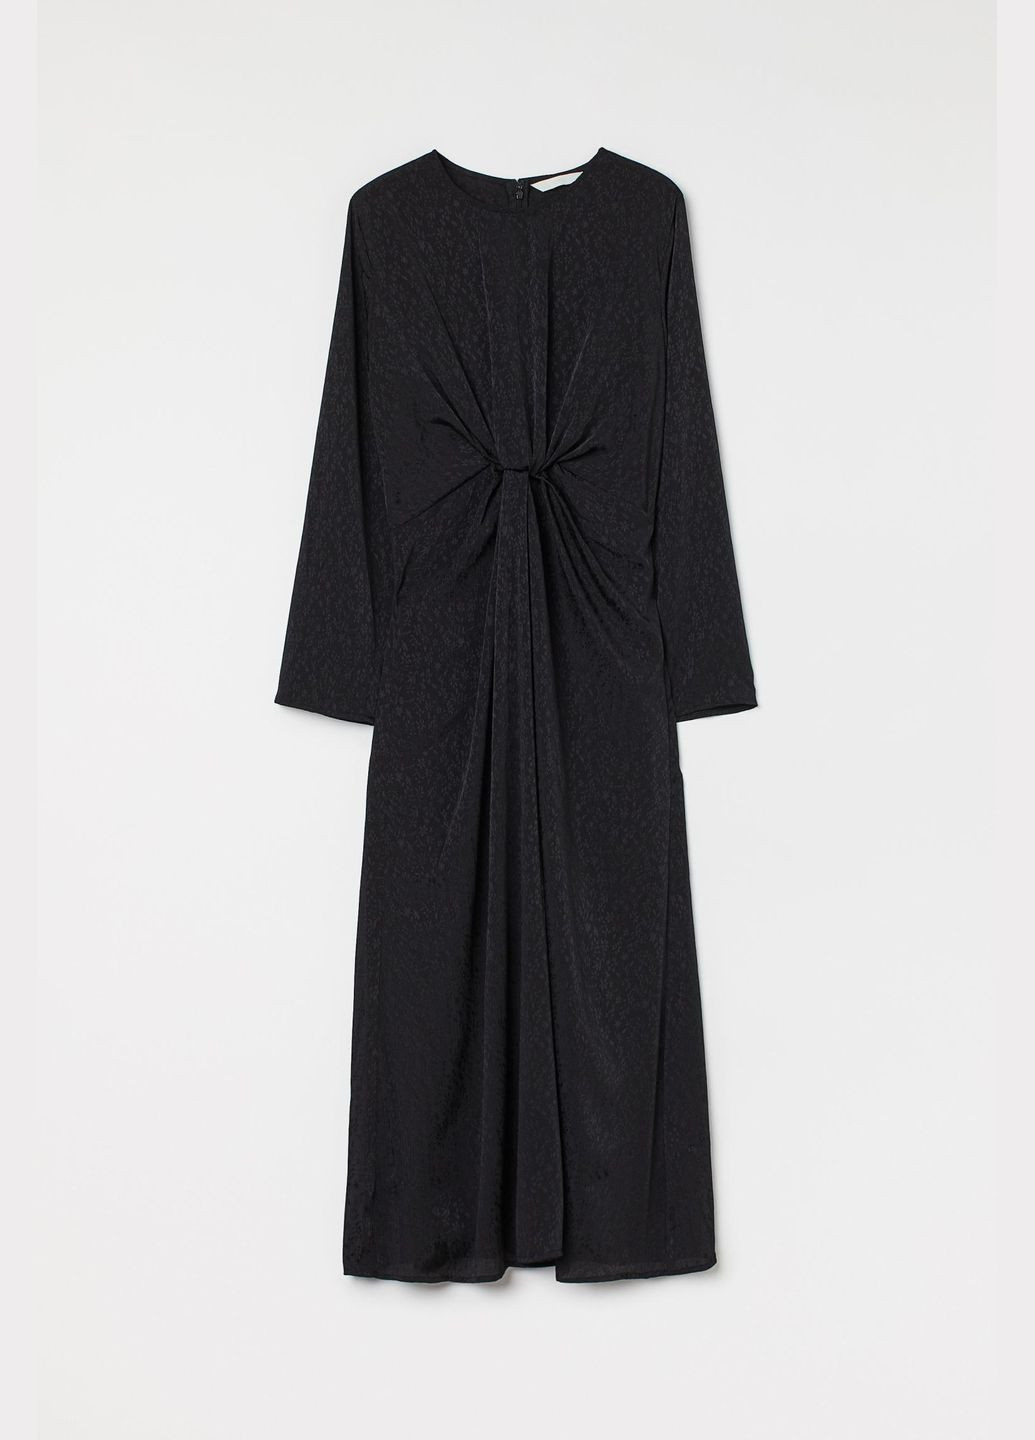 Черное платье демисезон,черный в узоры, H&M